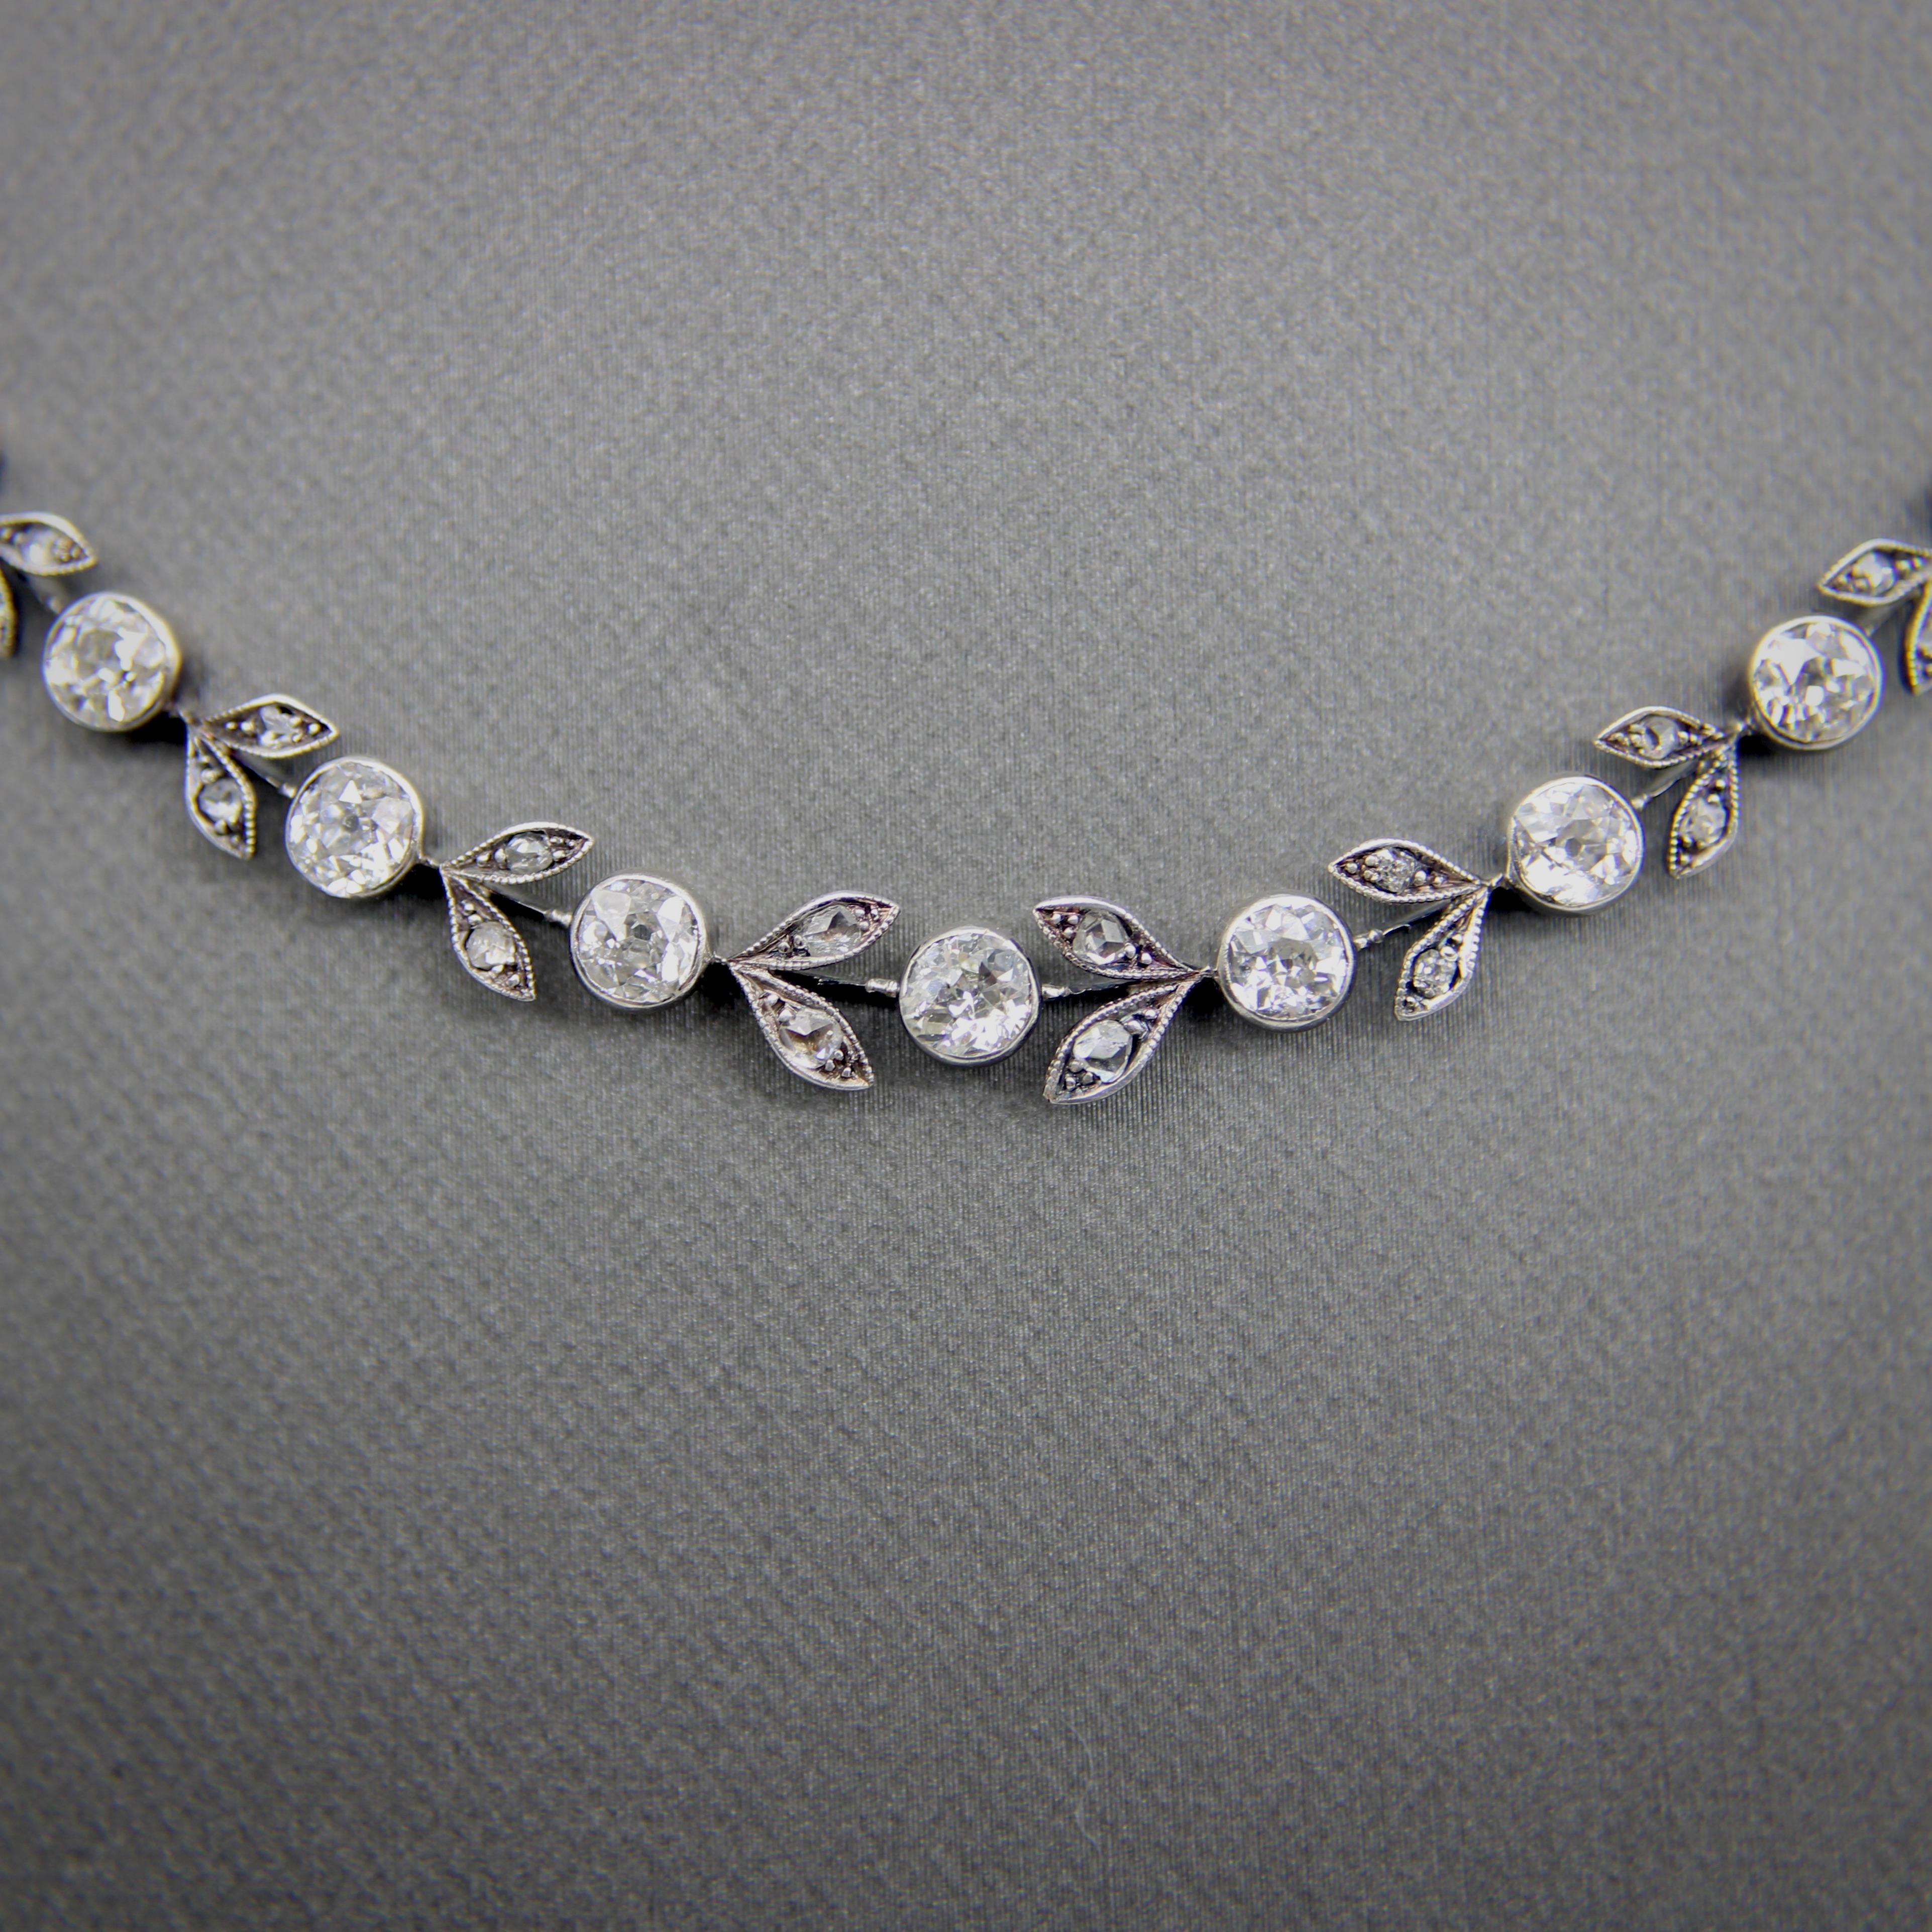 Diese Belle-Époque-Halskette aus 14 Karat Gold und Silber zeigt Diamanten im Old European Cut, Rose Cut und Single Cut in einem anmutigen Girlandenmotiv. In der Girlande wechseln sich runde, in die Lünette gefasste Diamanten und blattförmig gefasste